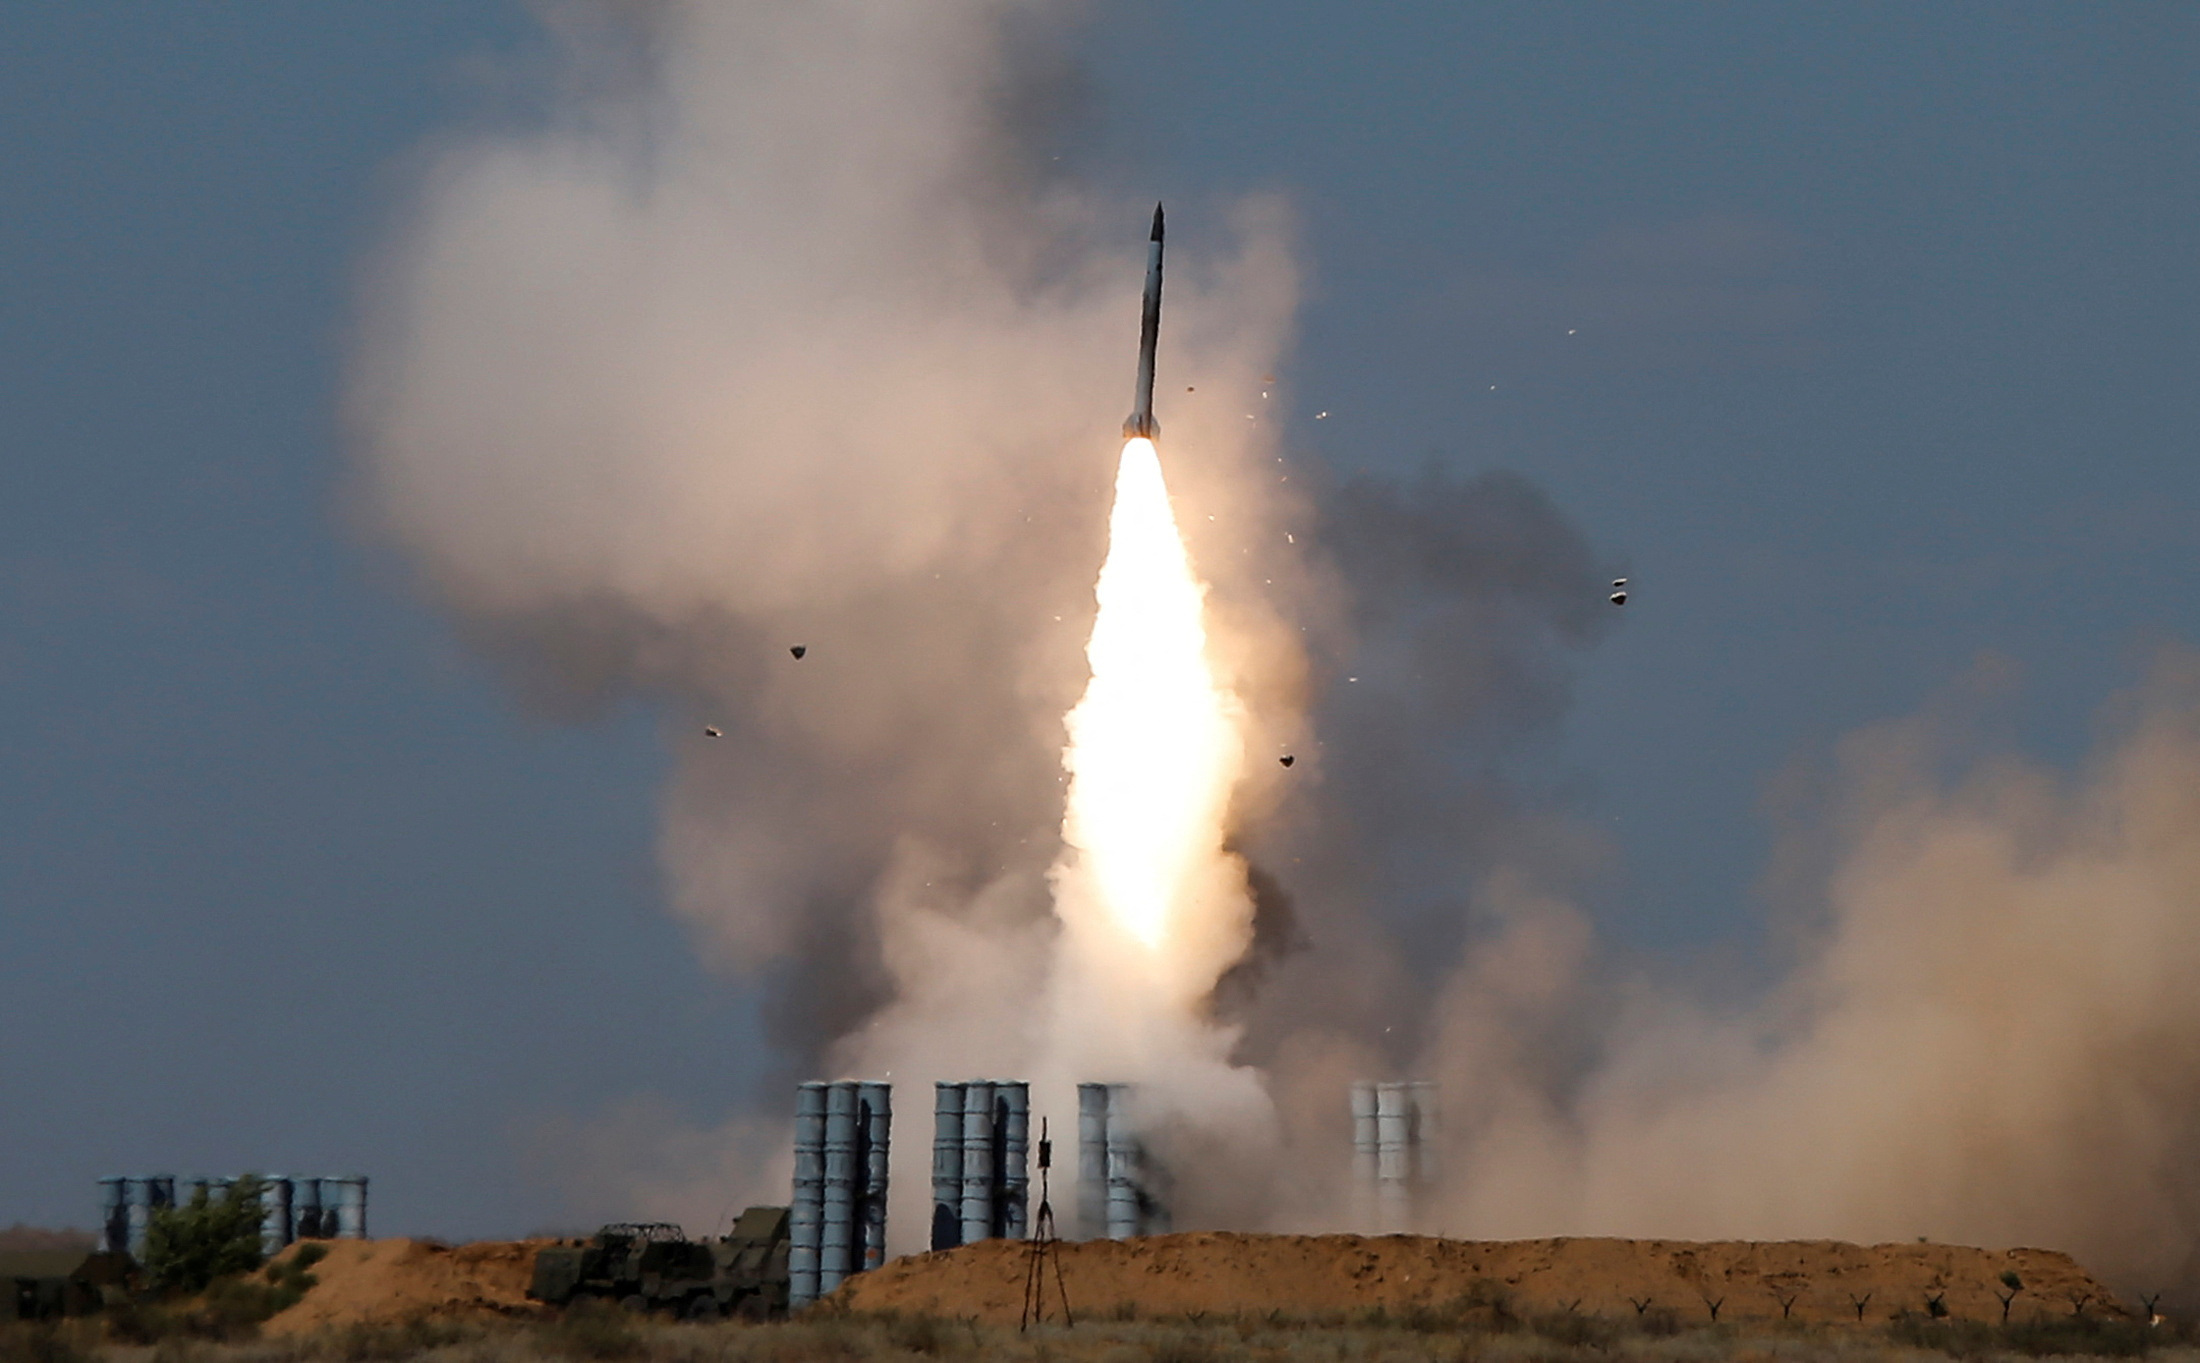 Η Ουκρανία κατέρριψε για πρώτη φορά ρωσικό υπερηχητικό πύραυλο Kinjal